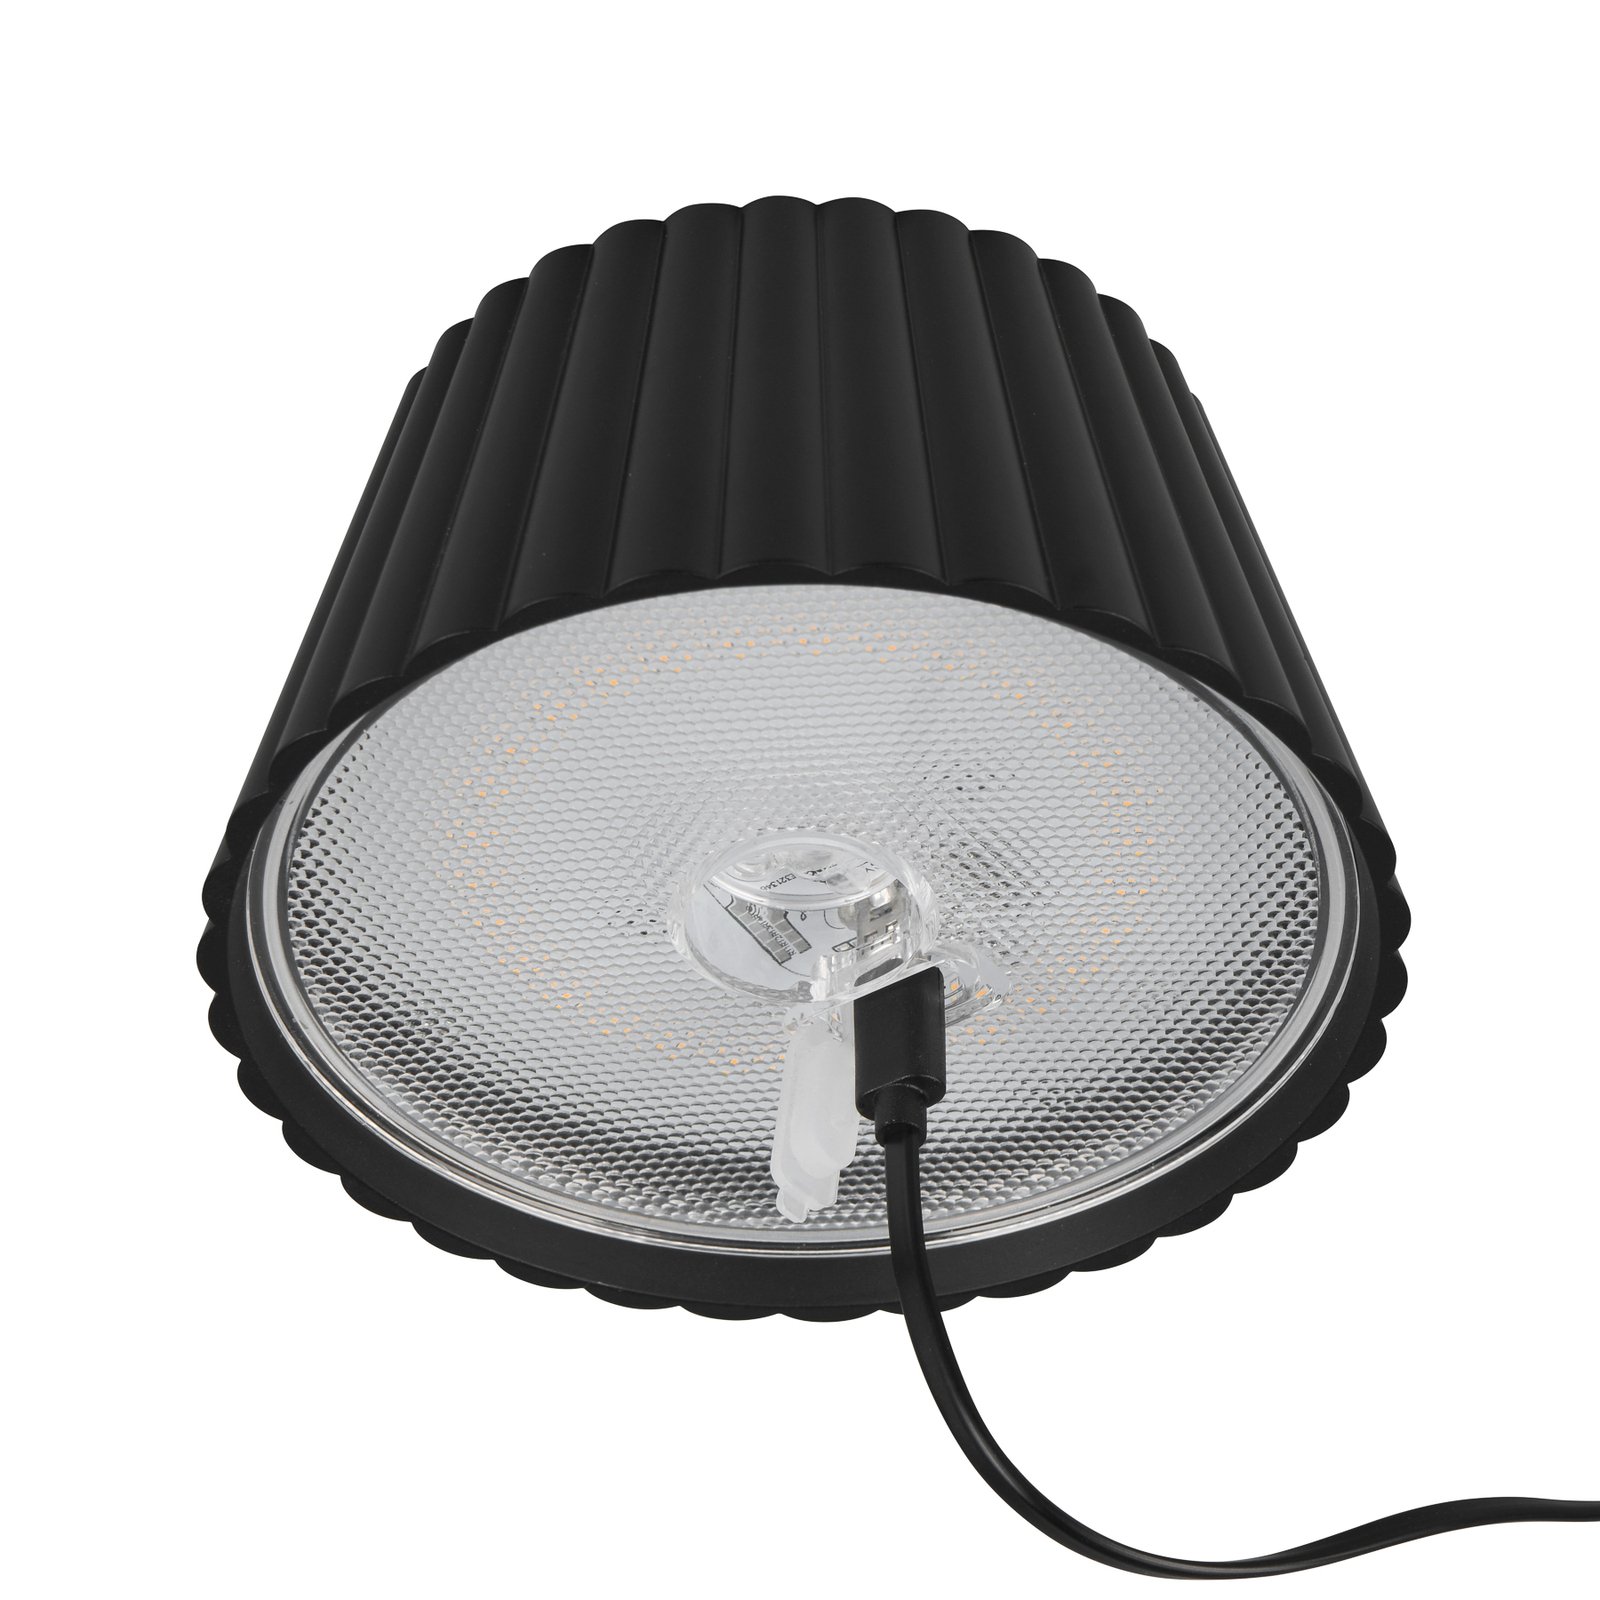 Suarez ladattava LED-pöytävalaisin, musta, korkeus 39 cm, metallia